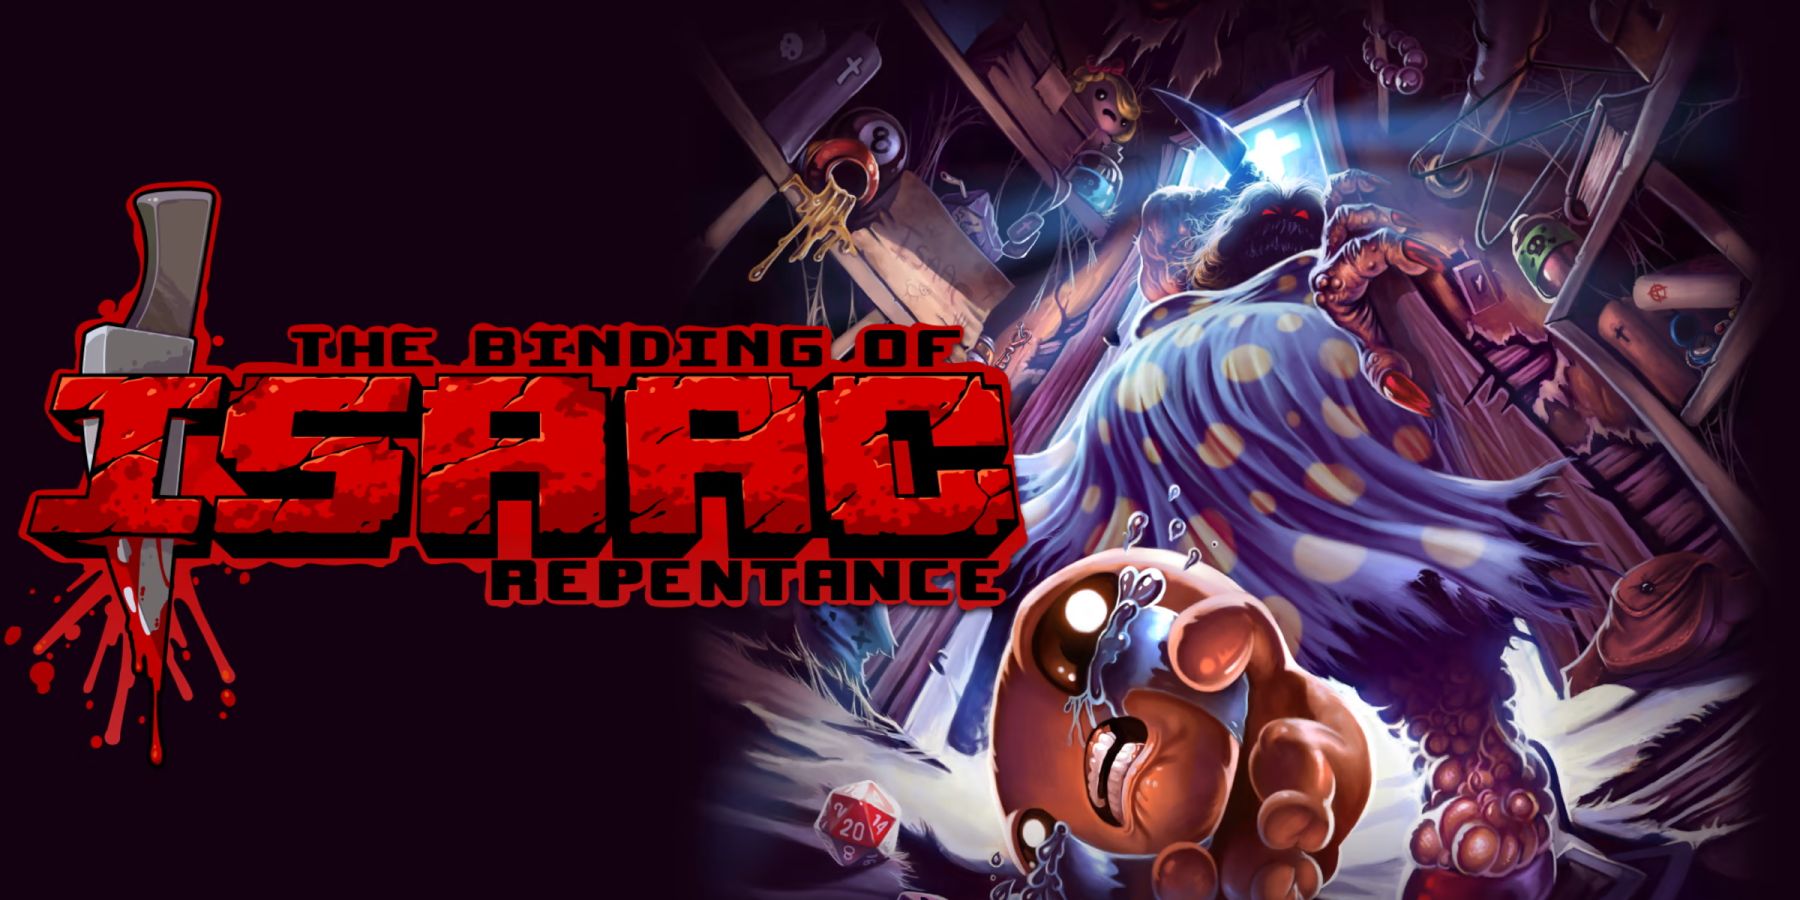 L'image clé de The Binding of Isaac: Repentance. L'image montre le protagoniste Isaac contre des visuels grotesques du jeu.